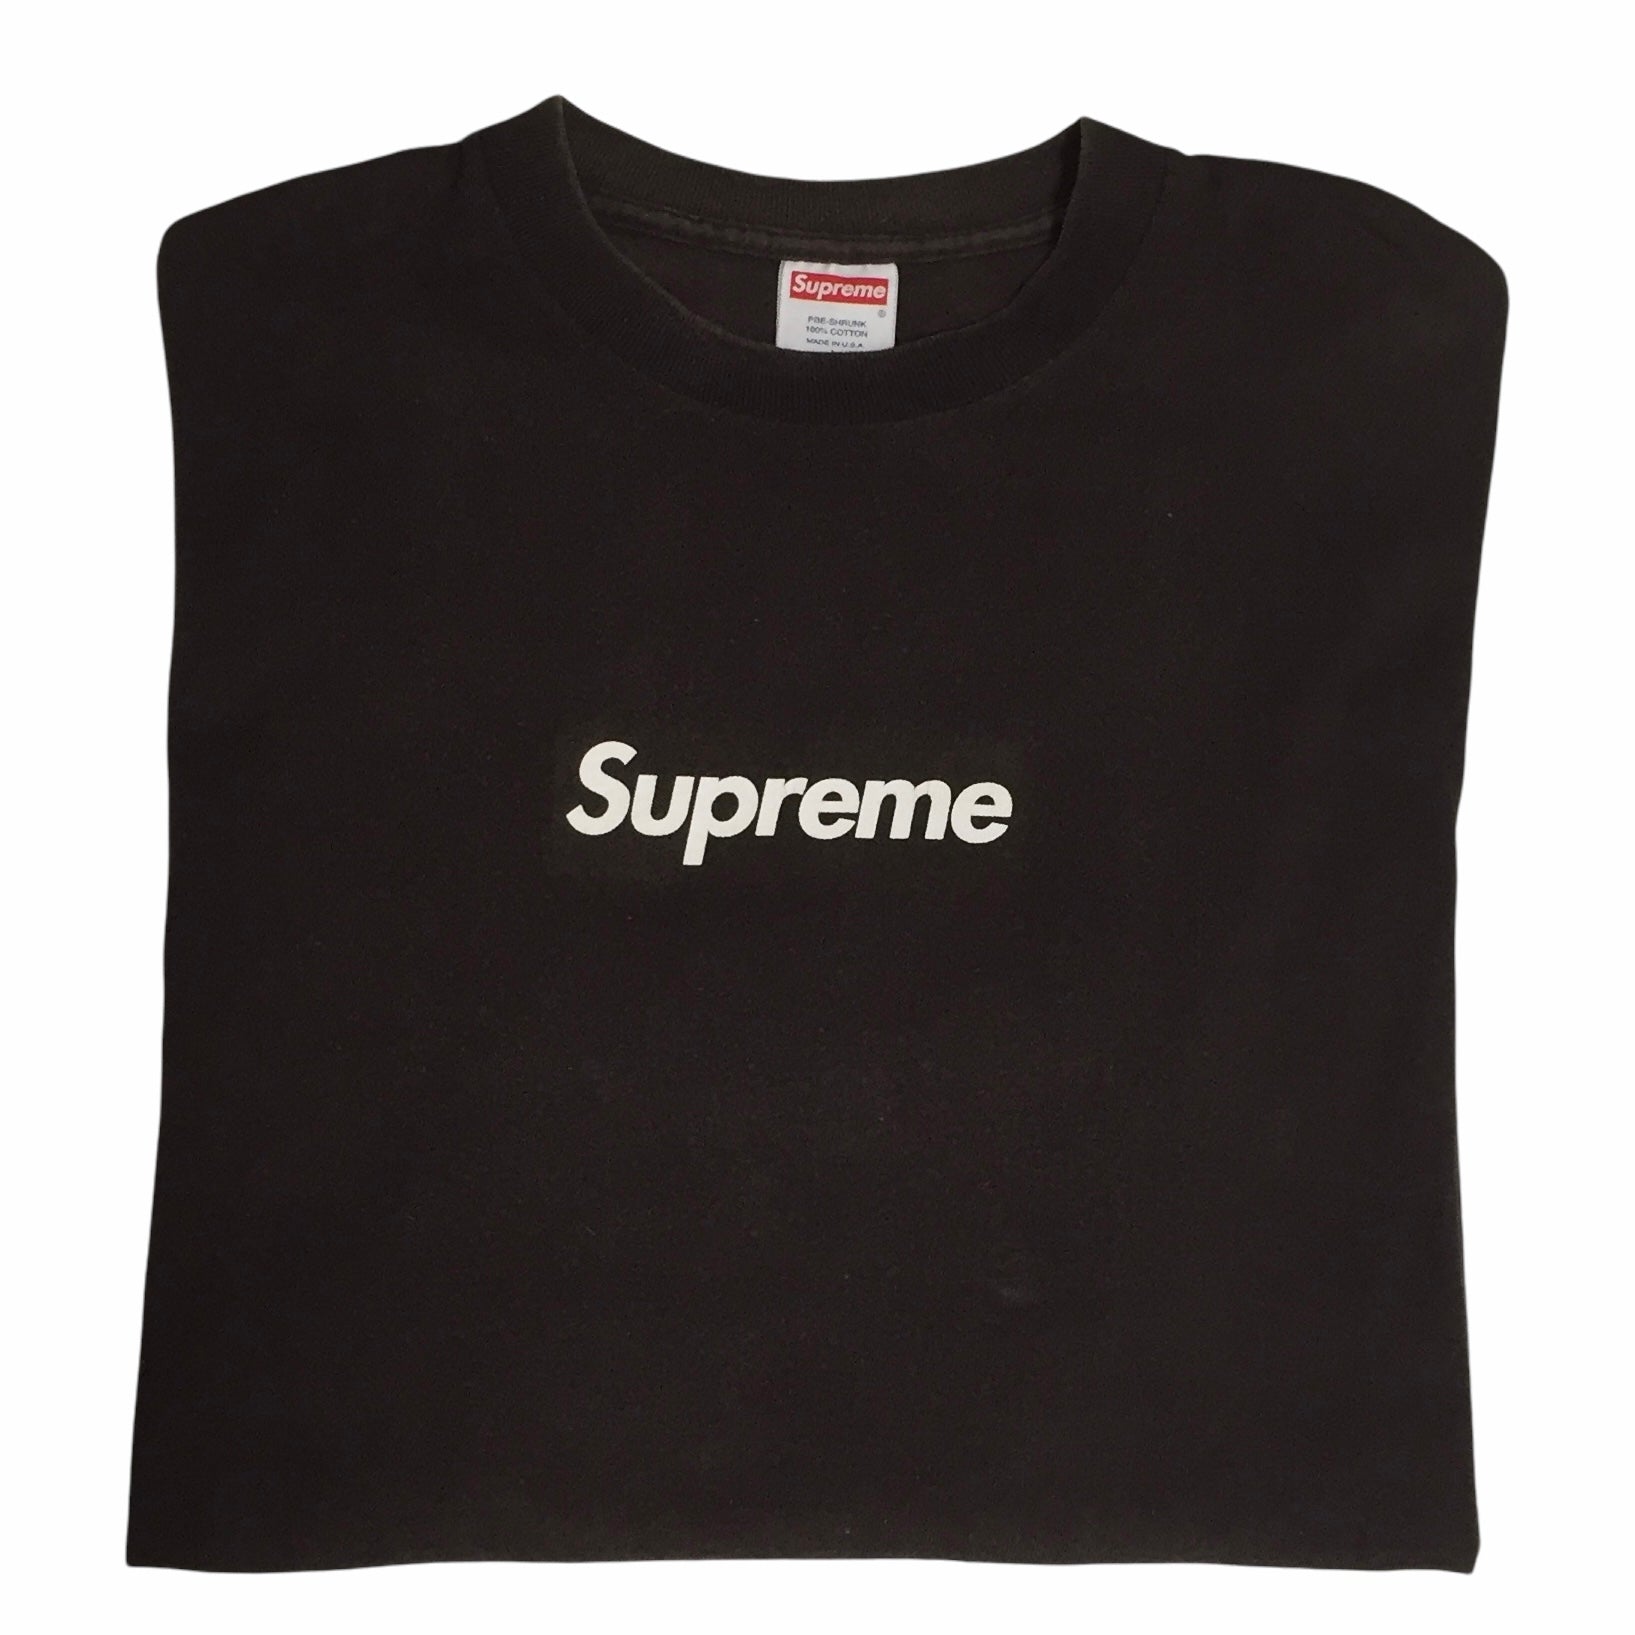 Supreme 2003 Sky Blue Tonal Box Logo Graphic T Shirt Size Medium USA Made  RARE